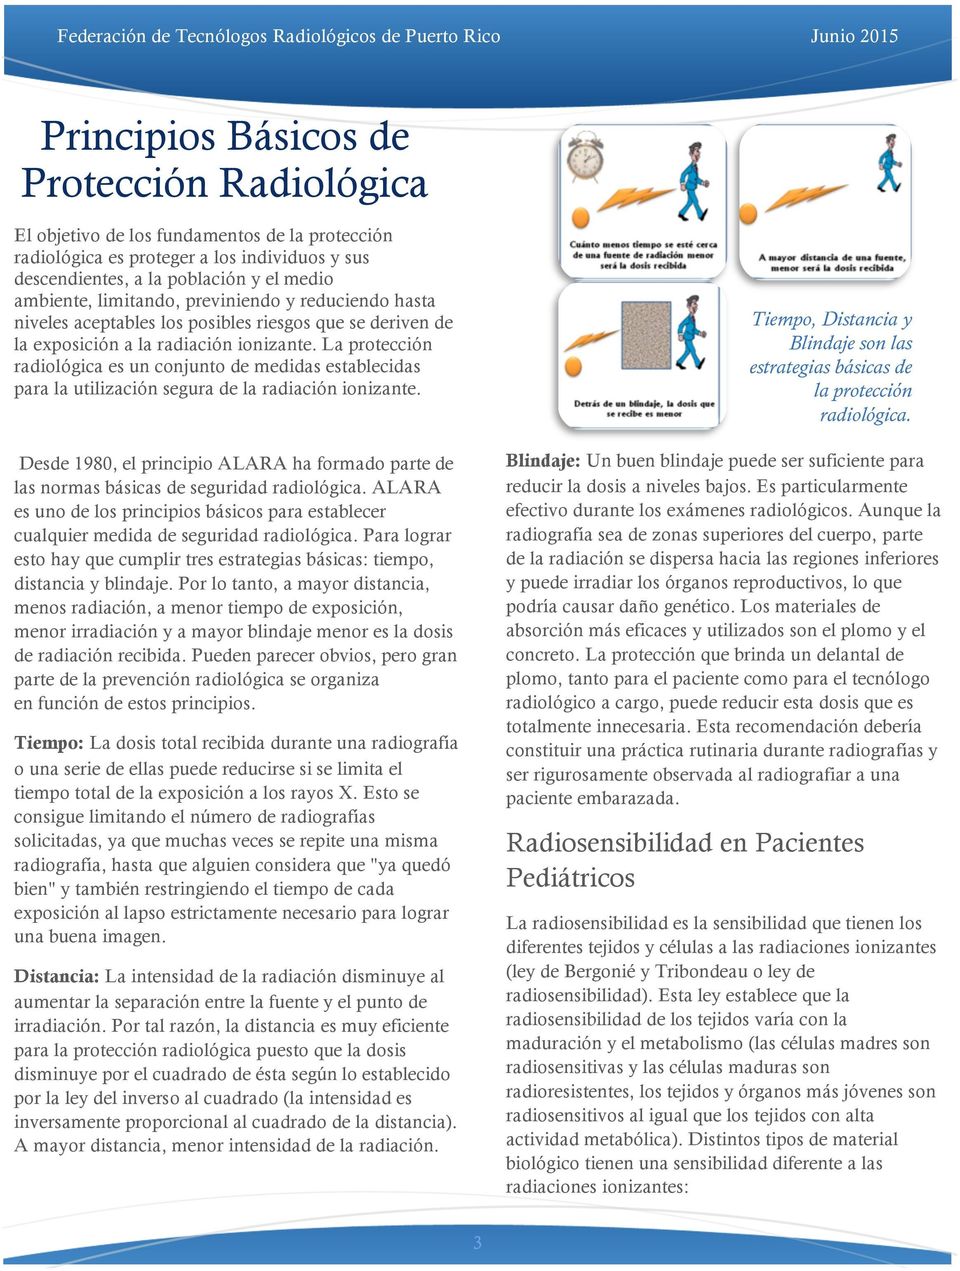 La protección radiológica es un conjunto de medidas establecidas para la utilización segura de la radiación ionizante.